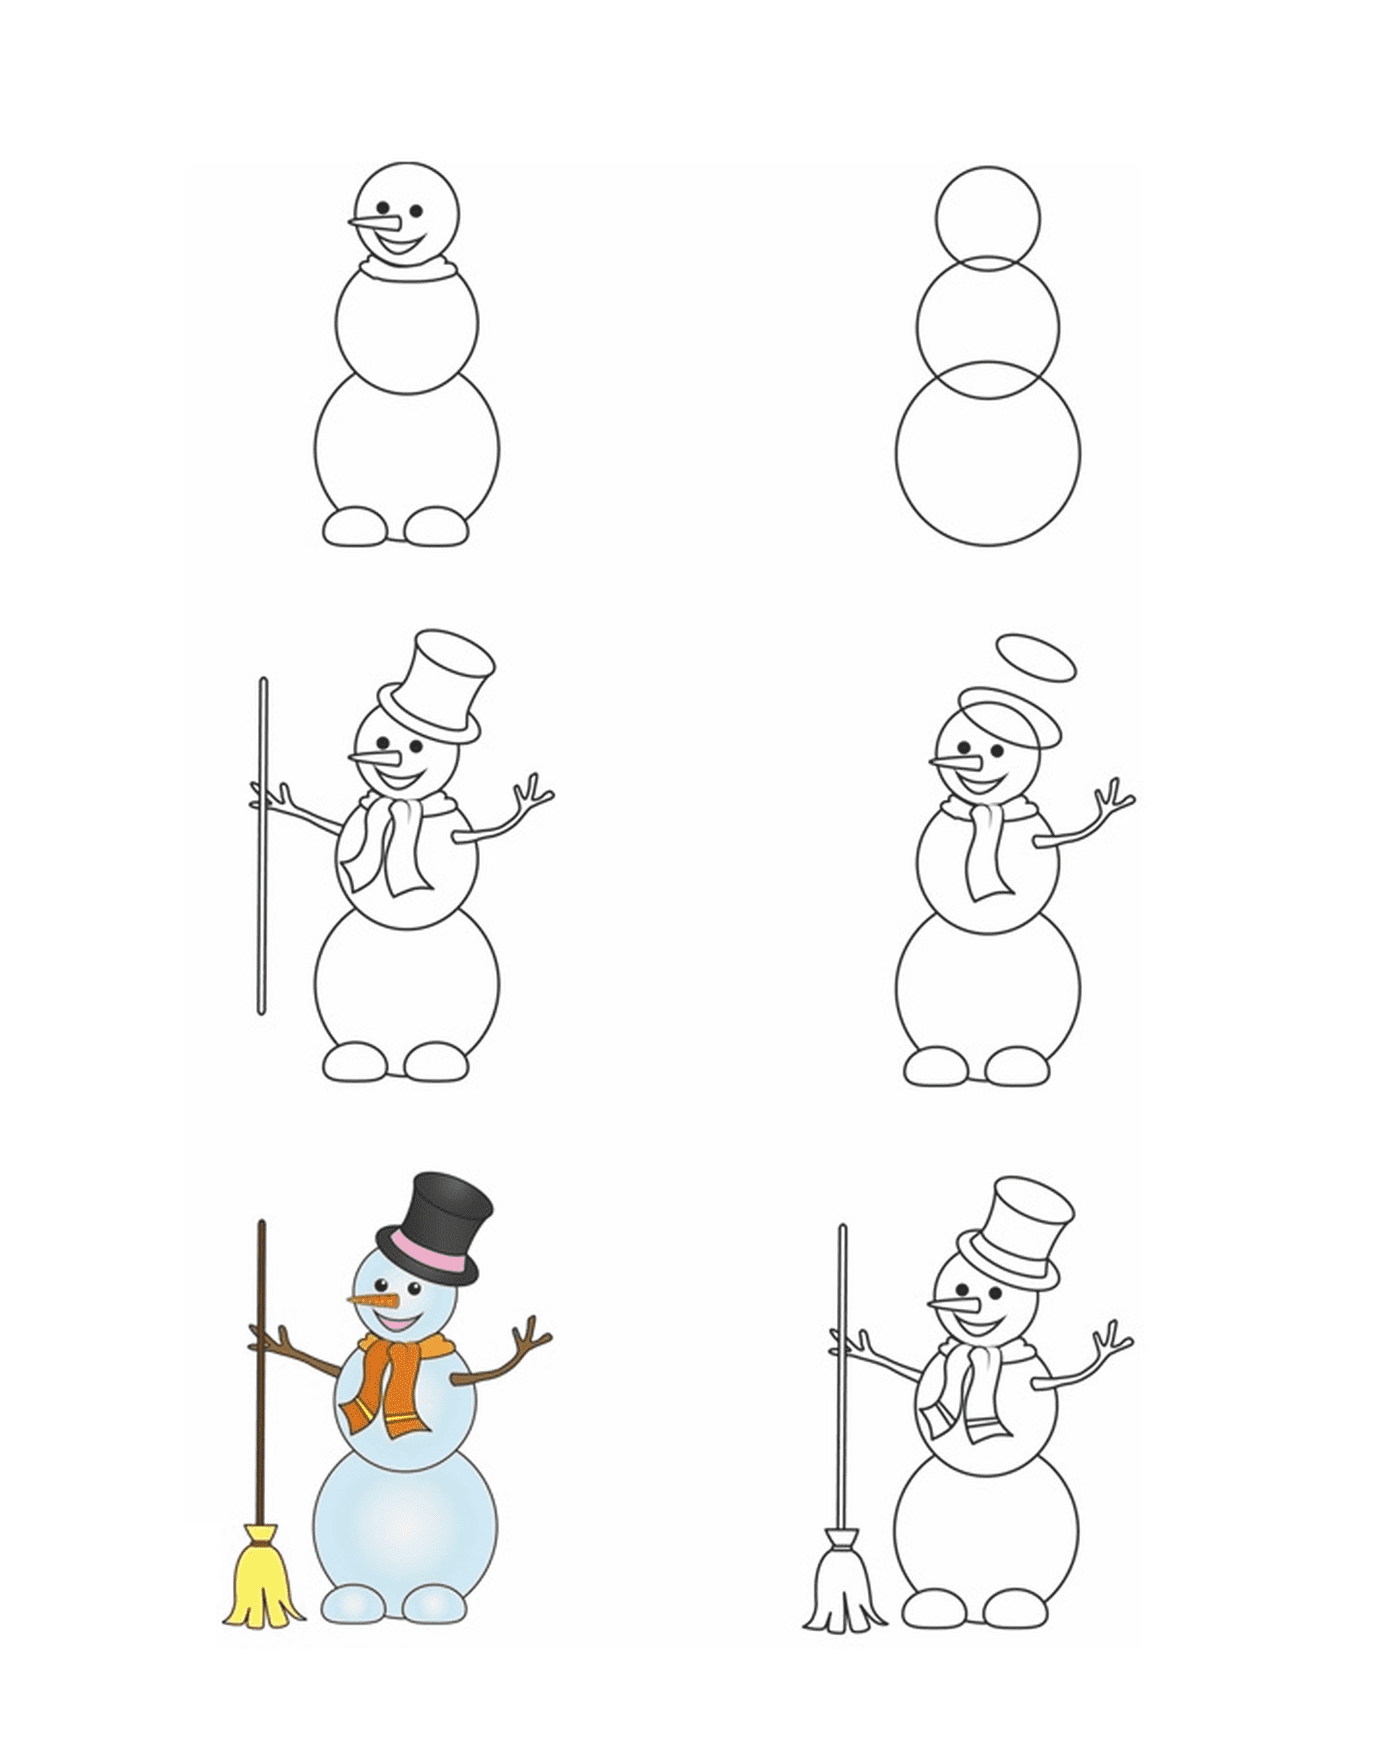  Como desenhar um boneco de neve passo a passo 